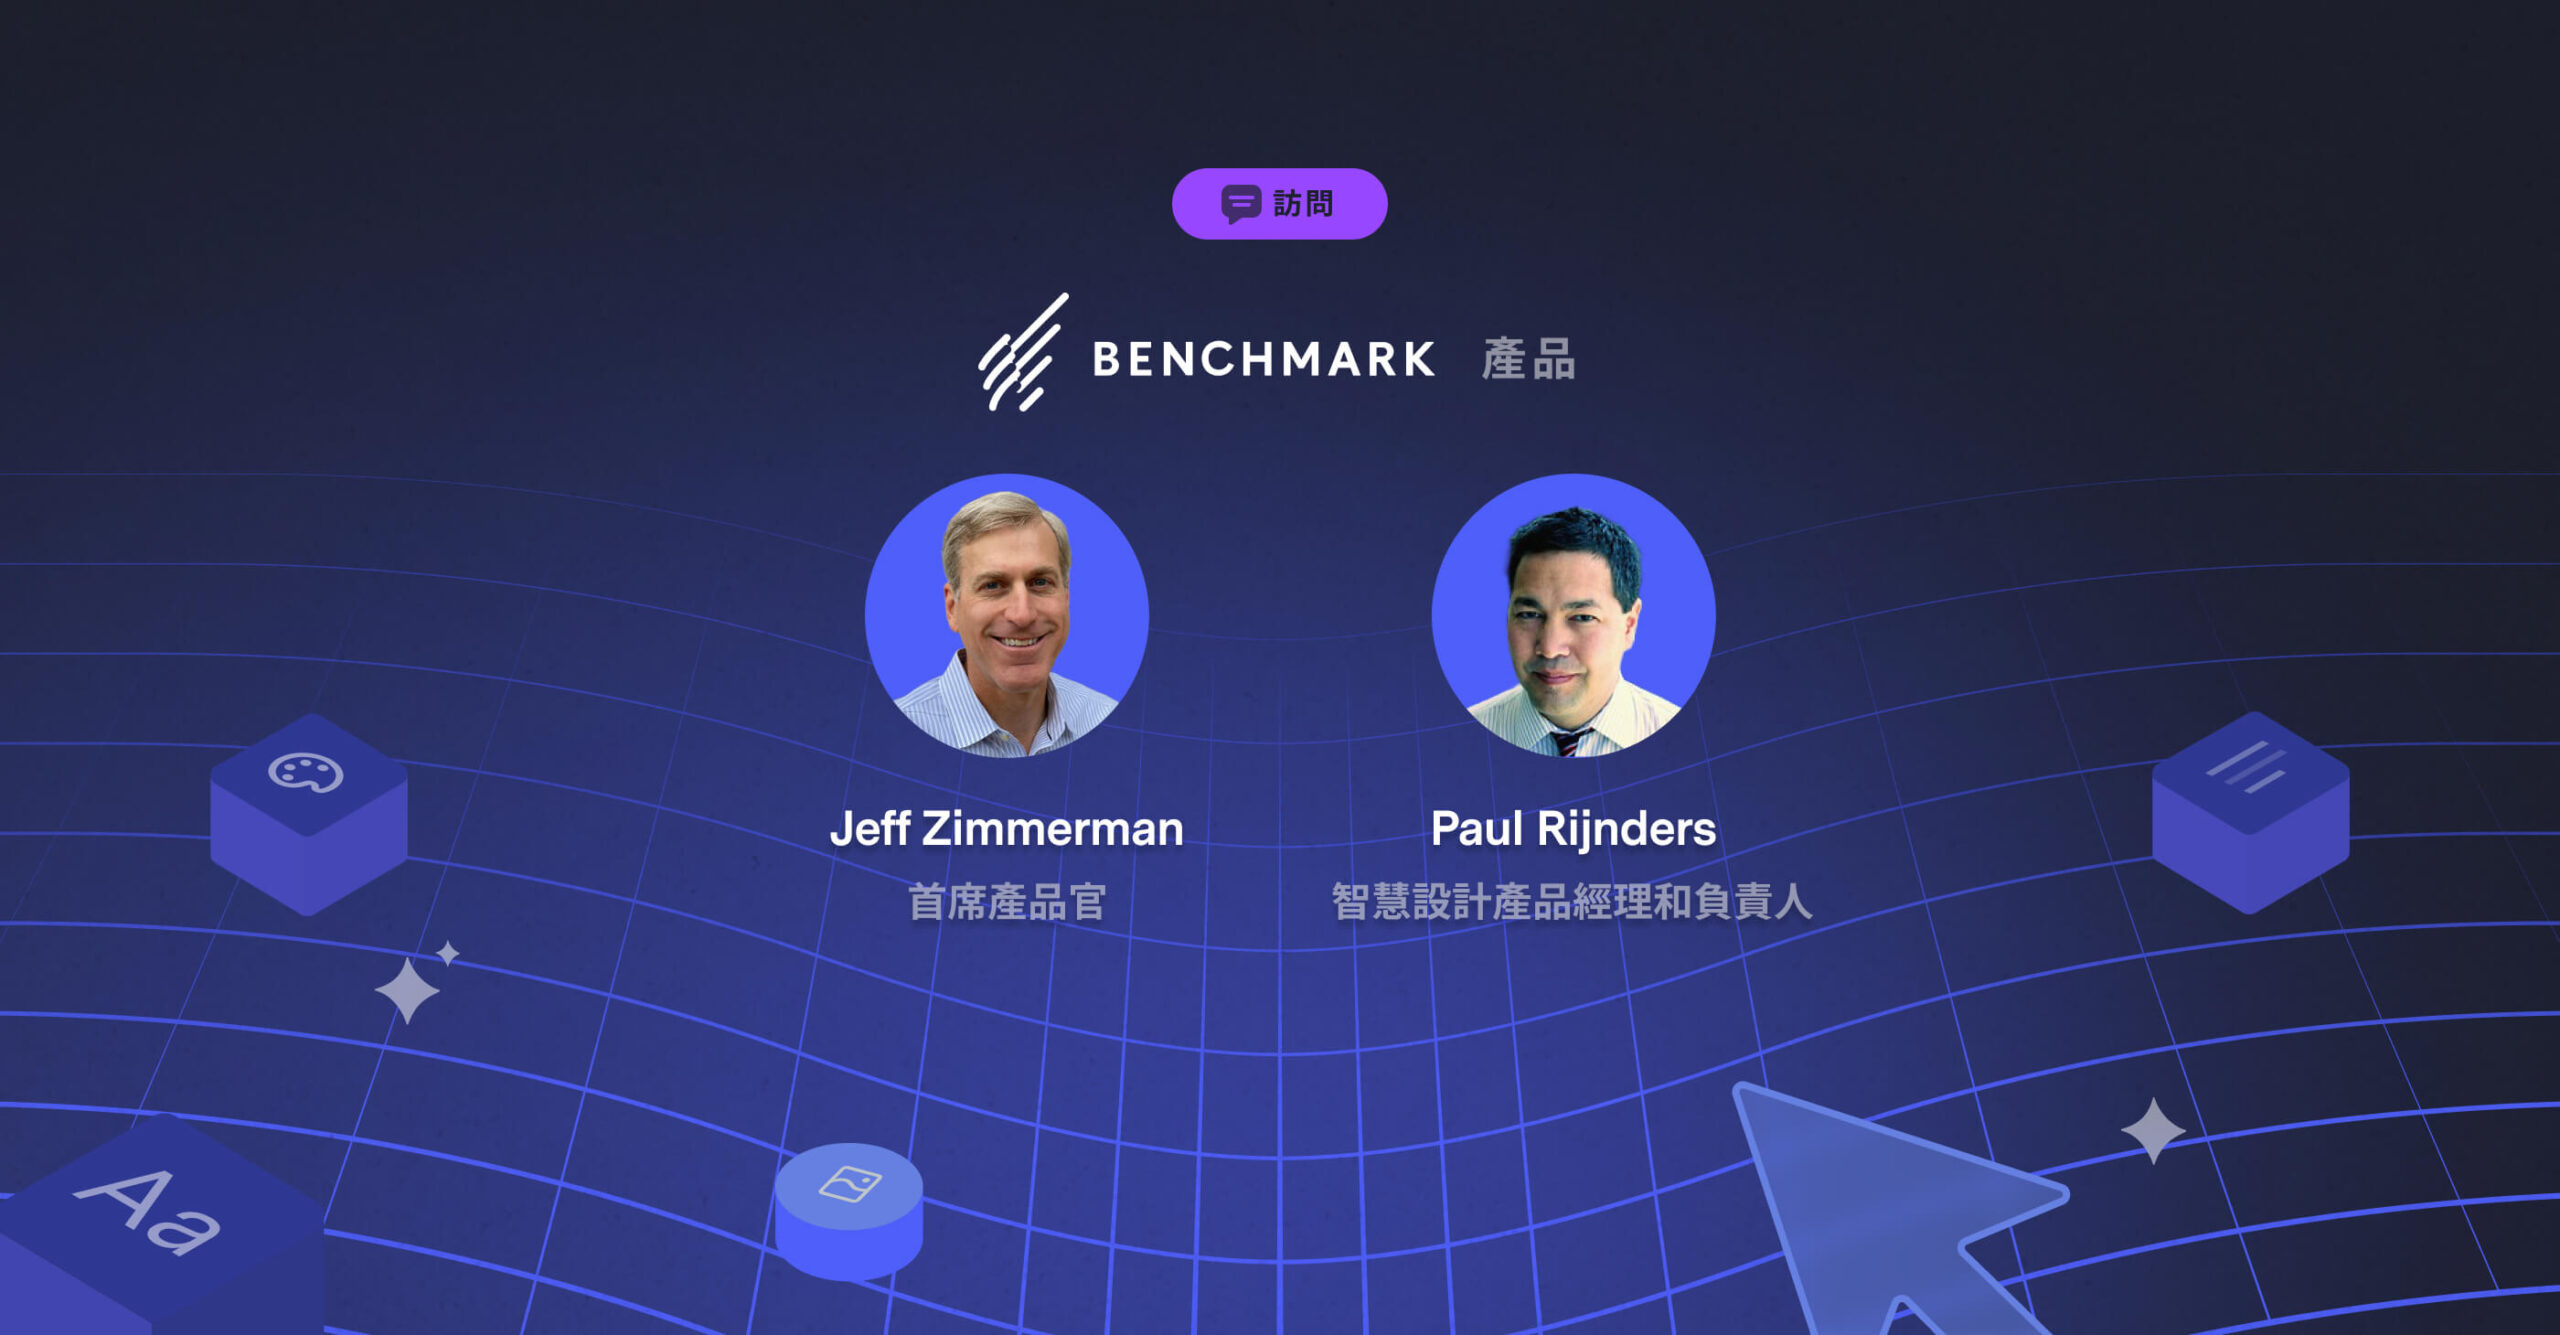 「智慧設計」的未來： Benchmark Email 產品團隊問答